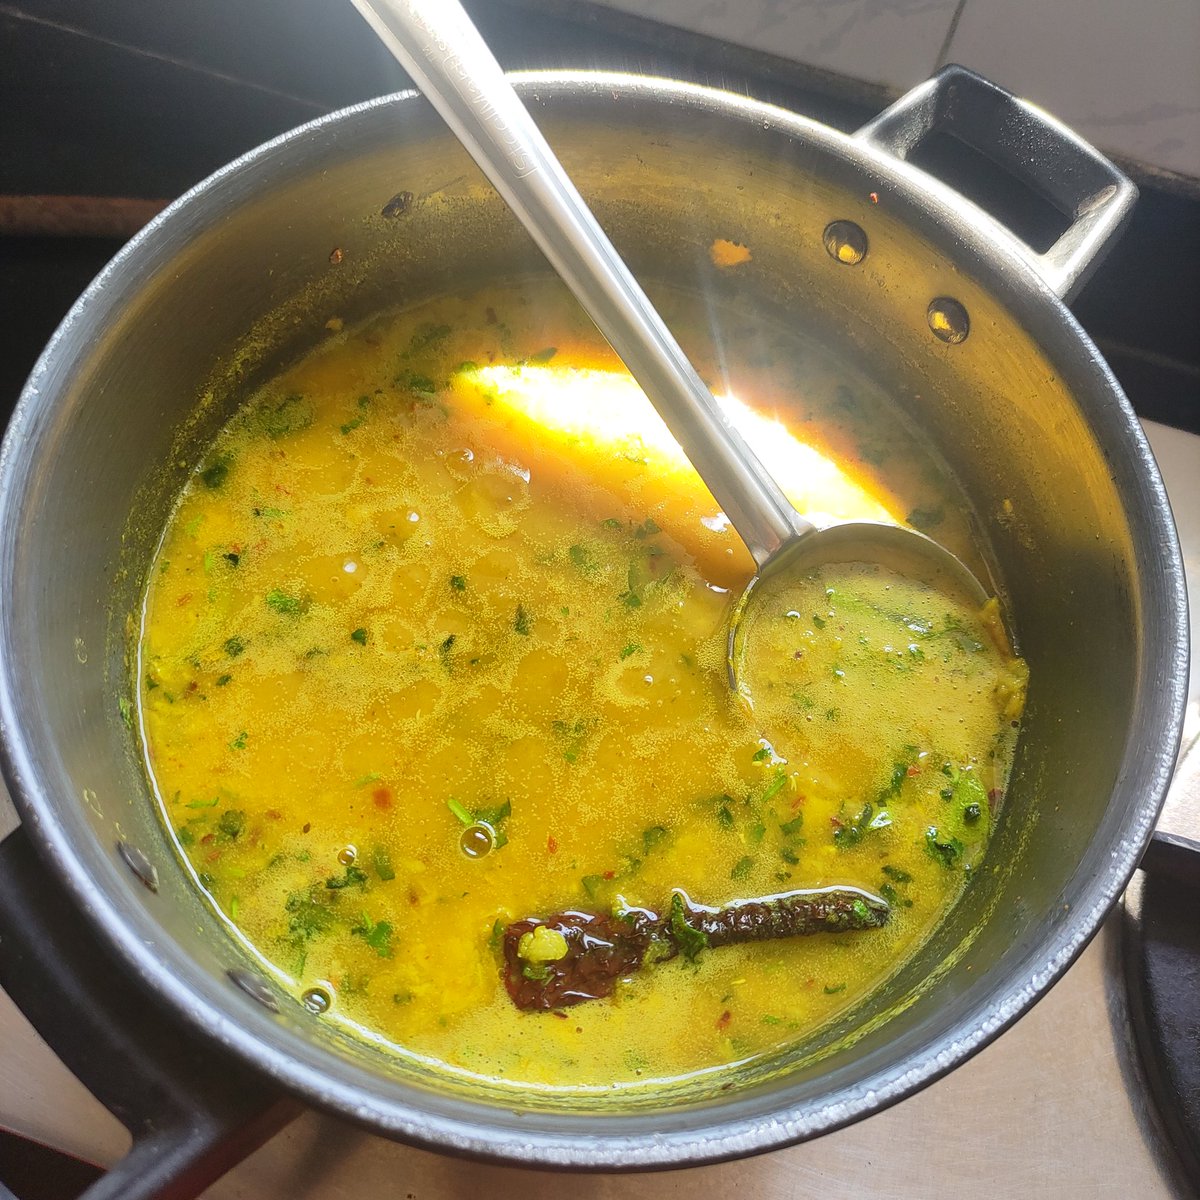 Aaj ka special - tadke waali daal-methi #Kitchenlife #kitchenexperiments #foodtwitter #lunch